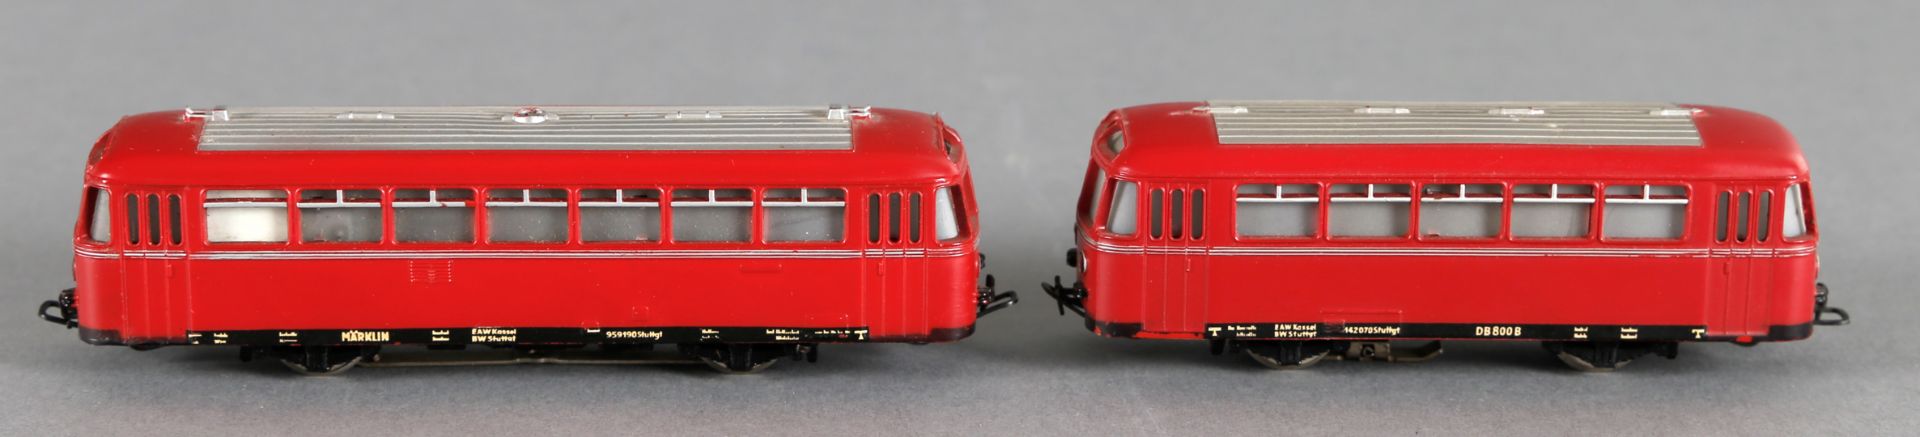 Märklin Schienenbus VT 95/ 795 der DB, wohl 1955 + Schienenbus Beiwagen